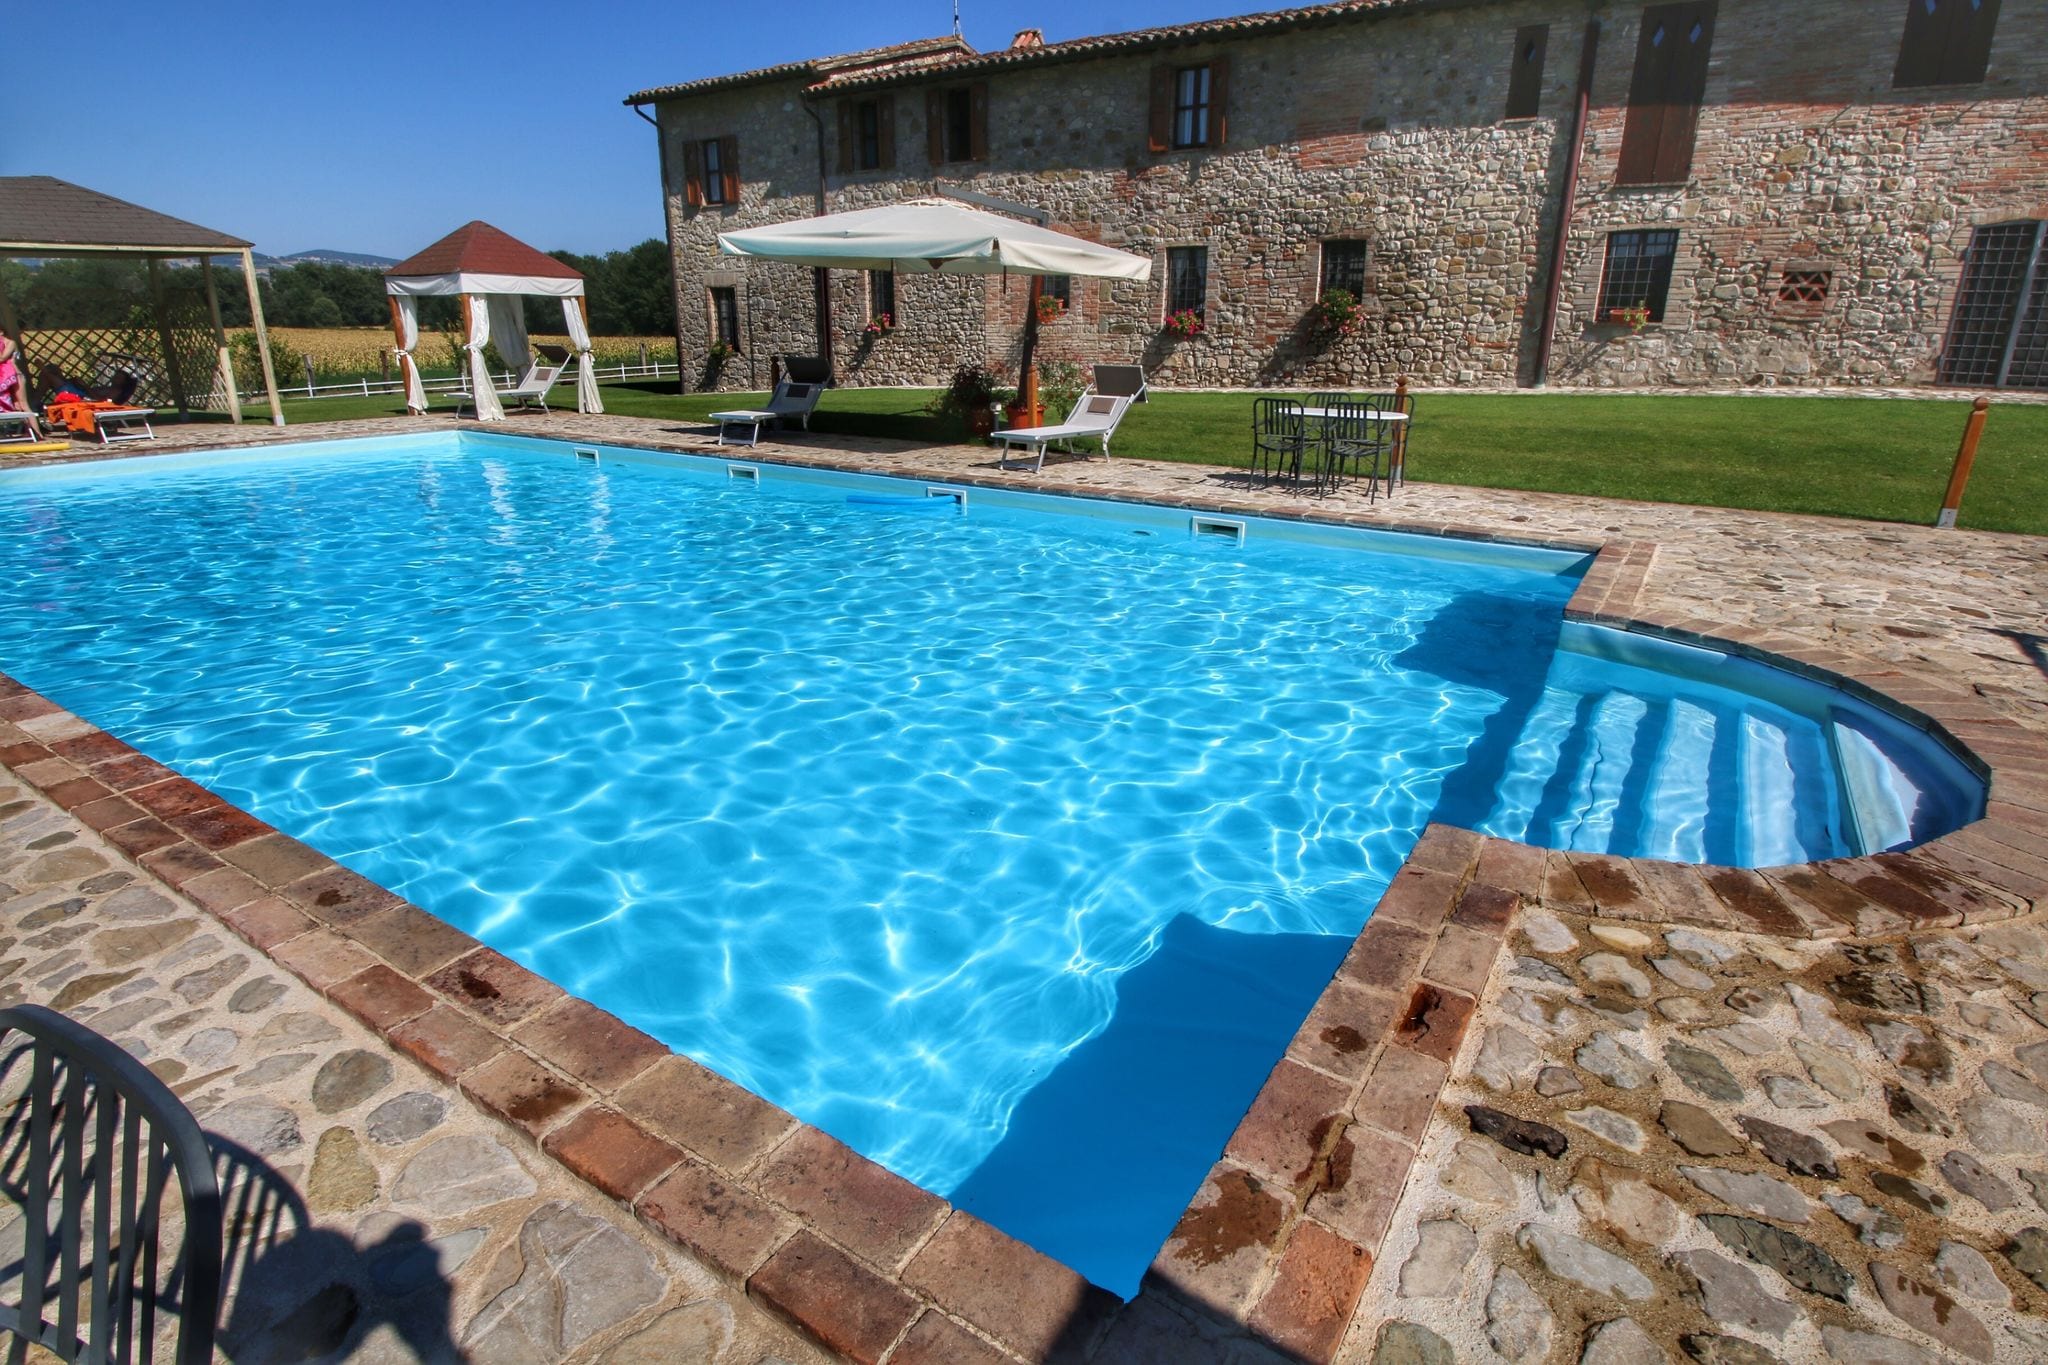 Appartement in een oude boerderij in Umbrië met zwembad